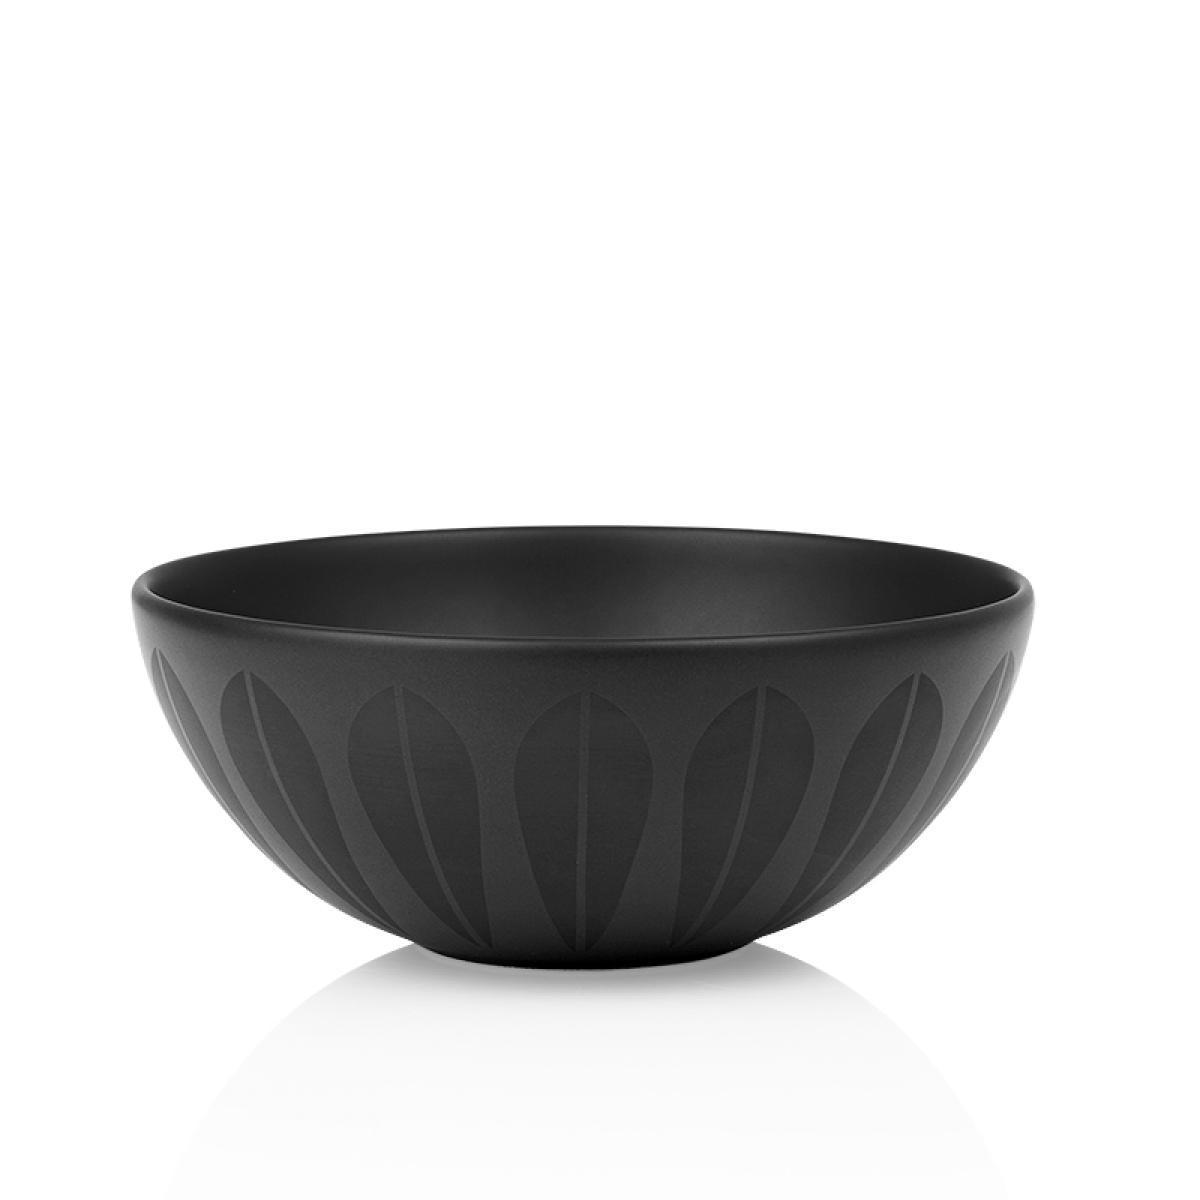 Lucie Kaas Arne Clausen Bowl noir, 24 cm